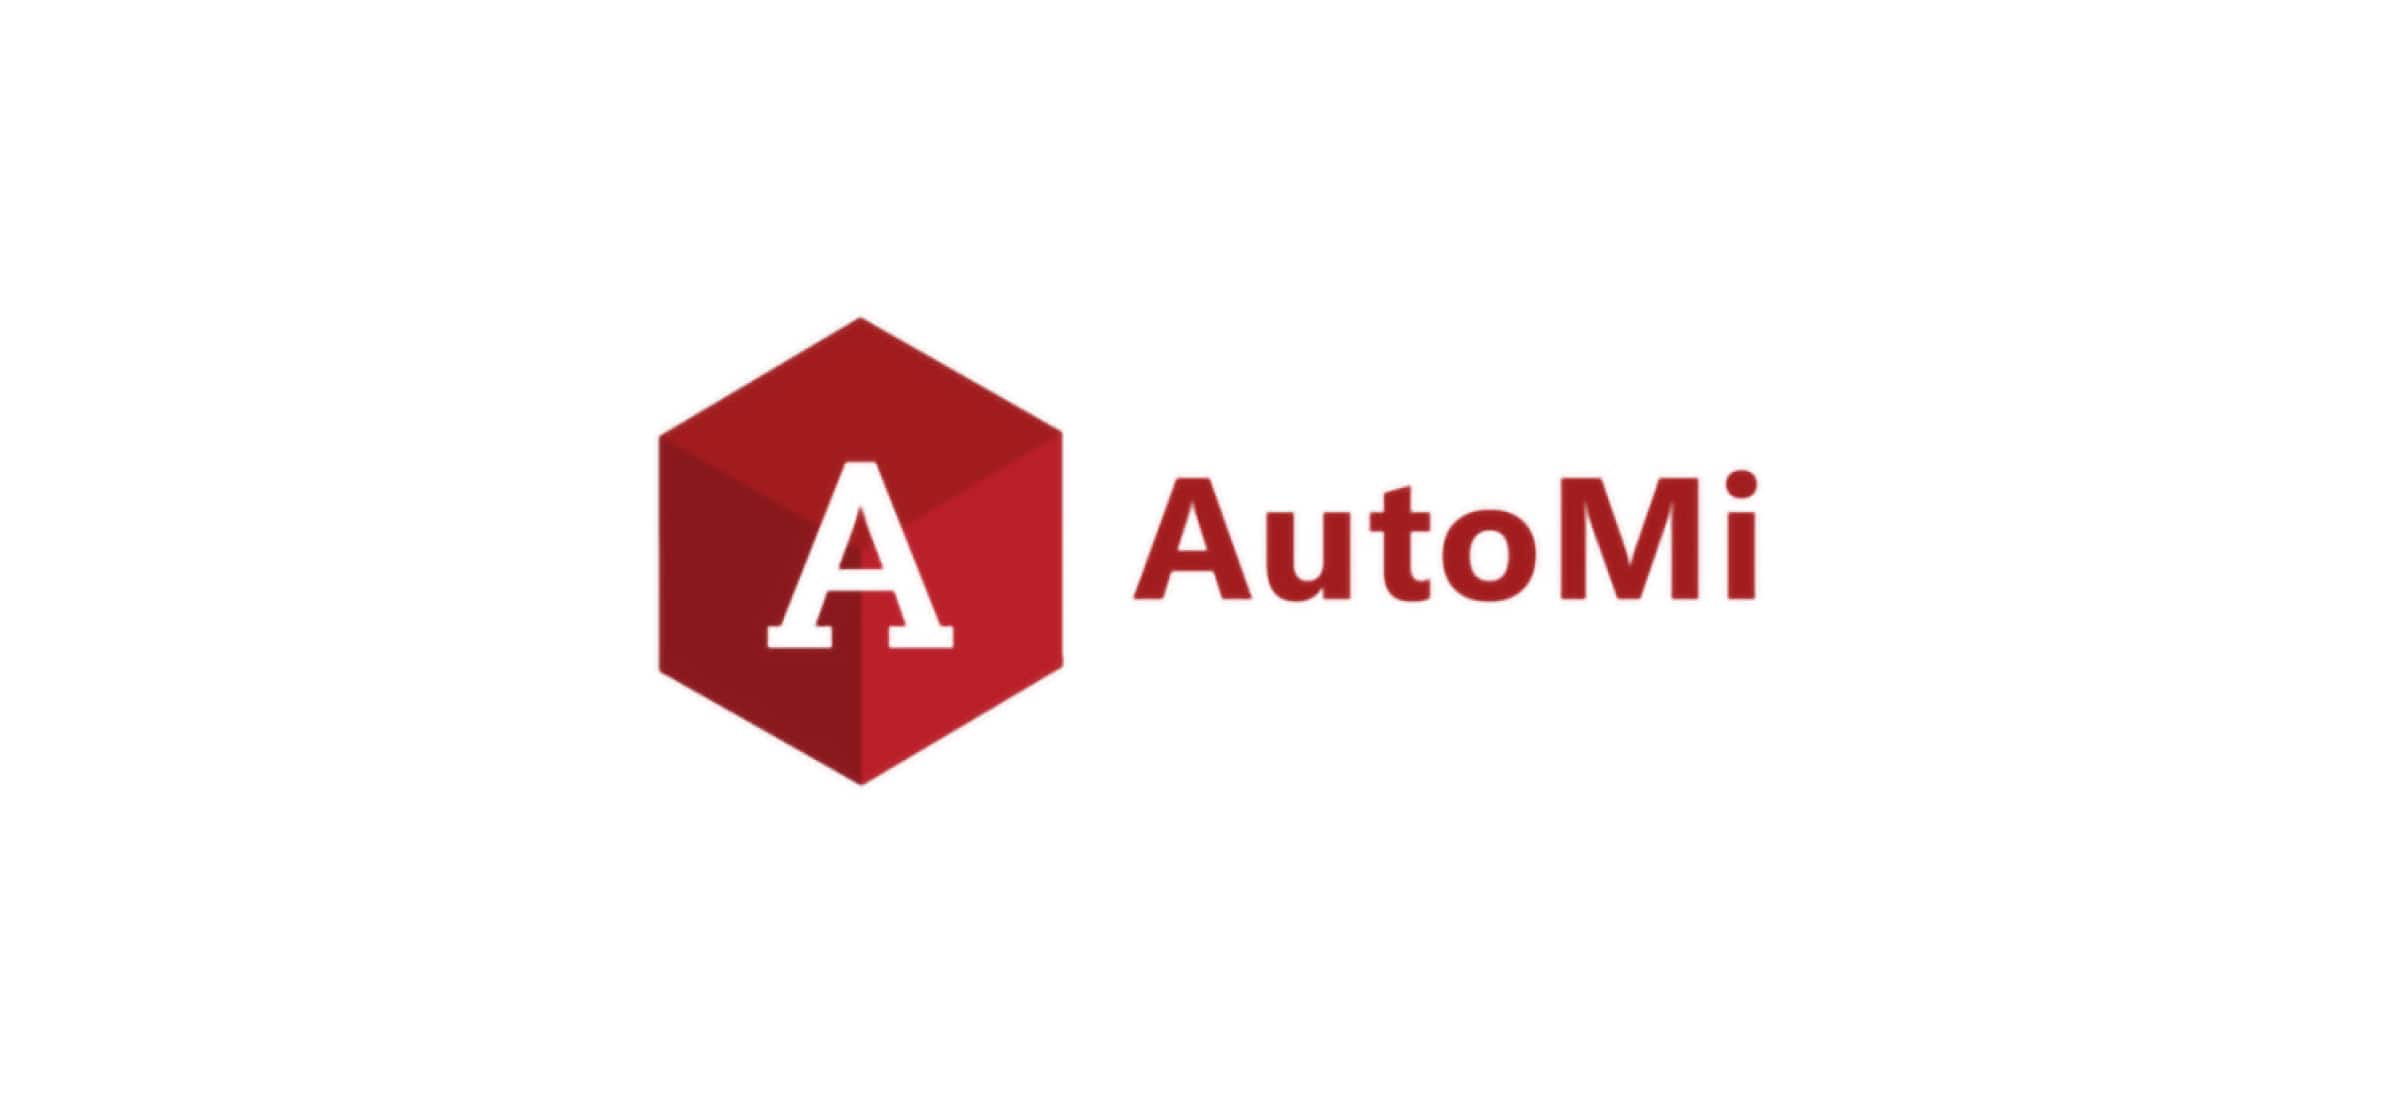 AutoMi logo